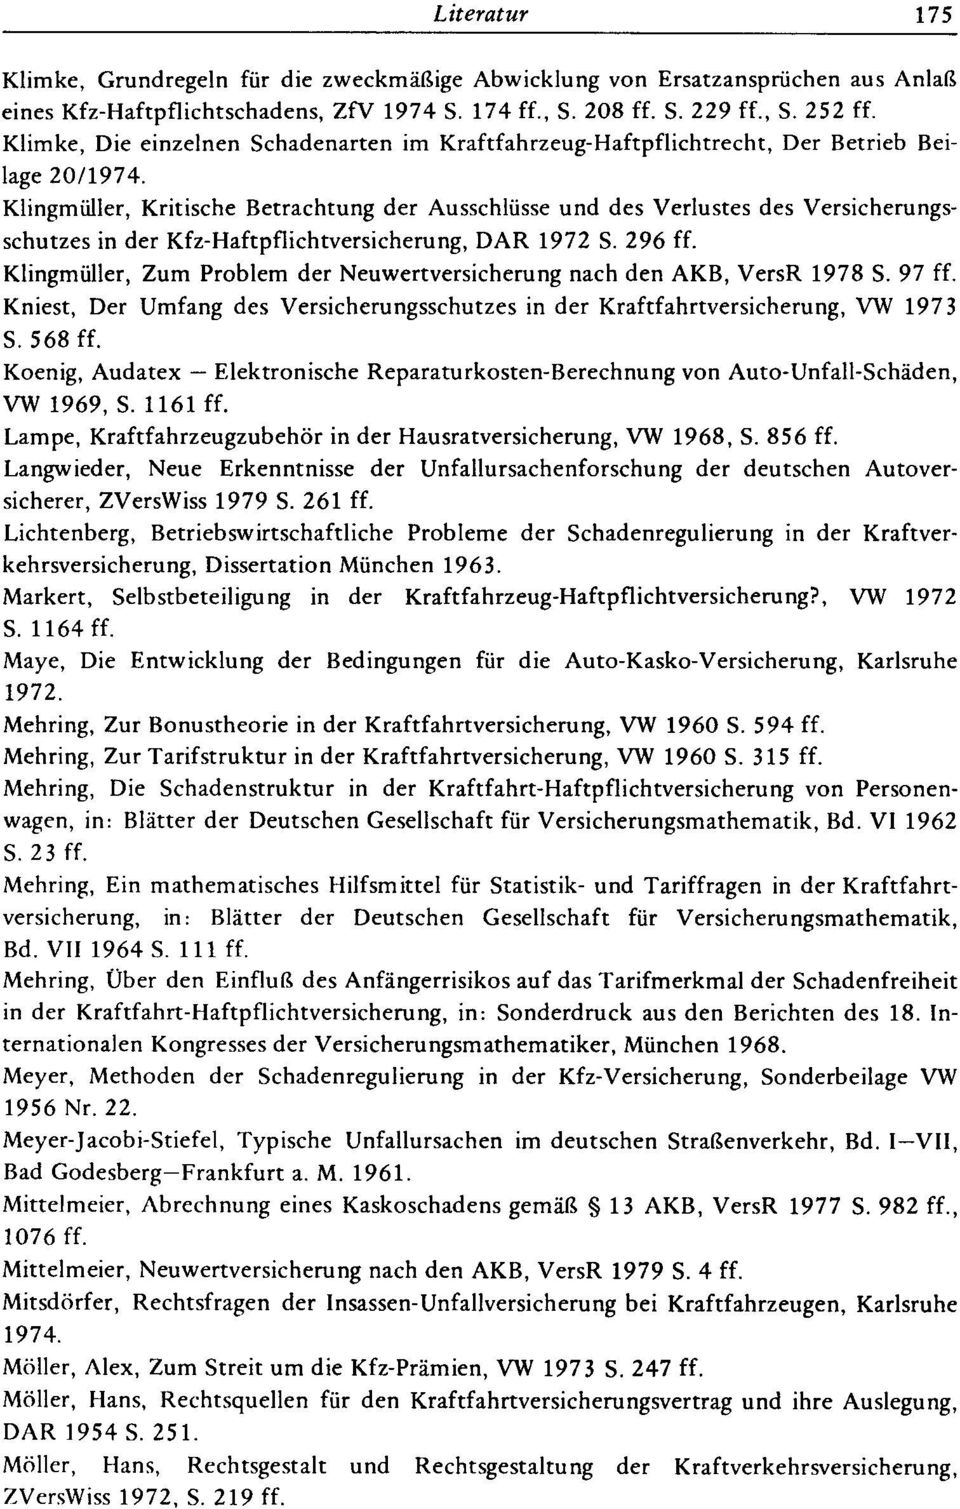 Klingmüller, Kritische Betrachtung der Ausschlüsse und des Verlustes des Versicherungsschutzes in der Kfz-Haftpflichtversicherung, DAR 1972 S. 296 ff.